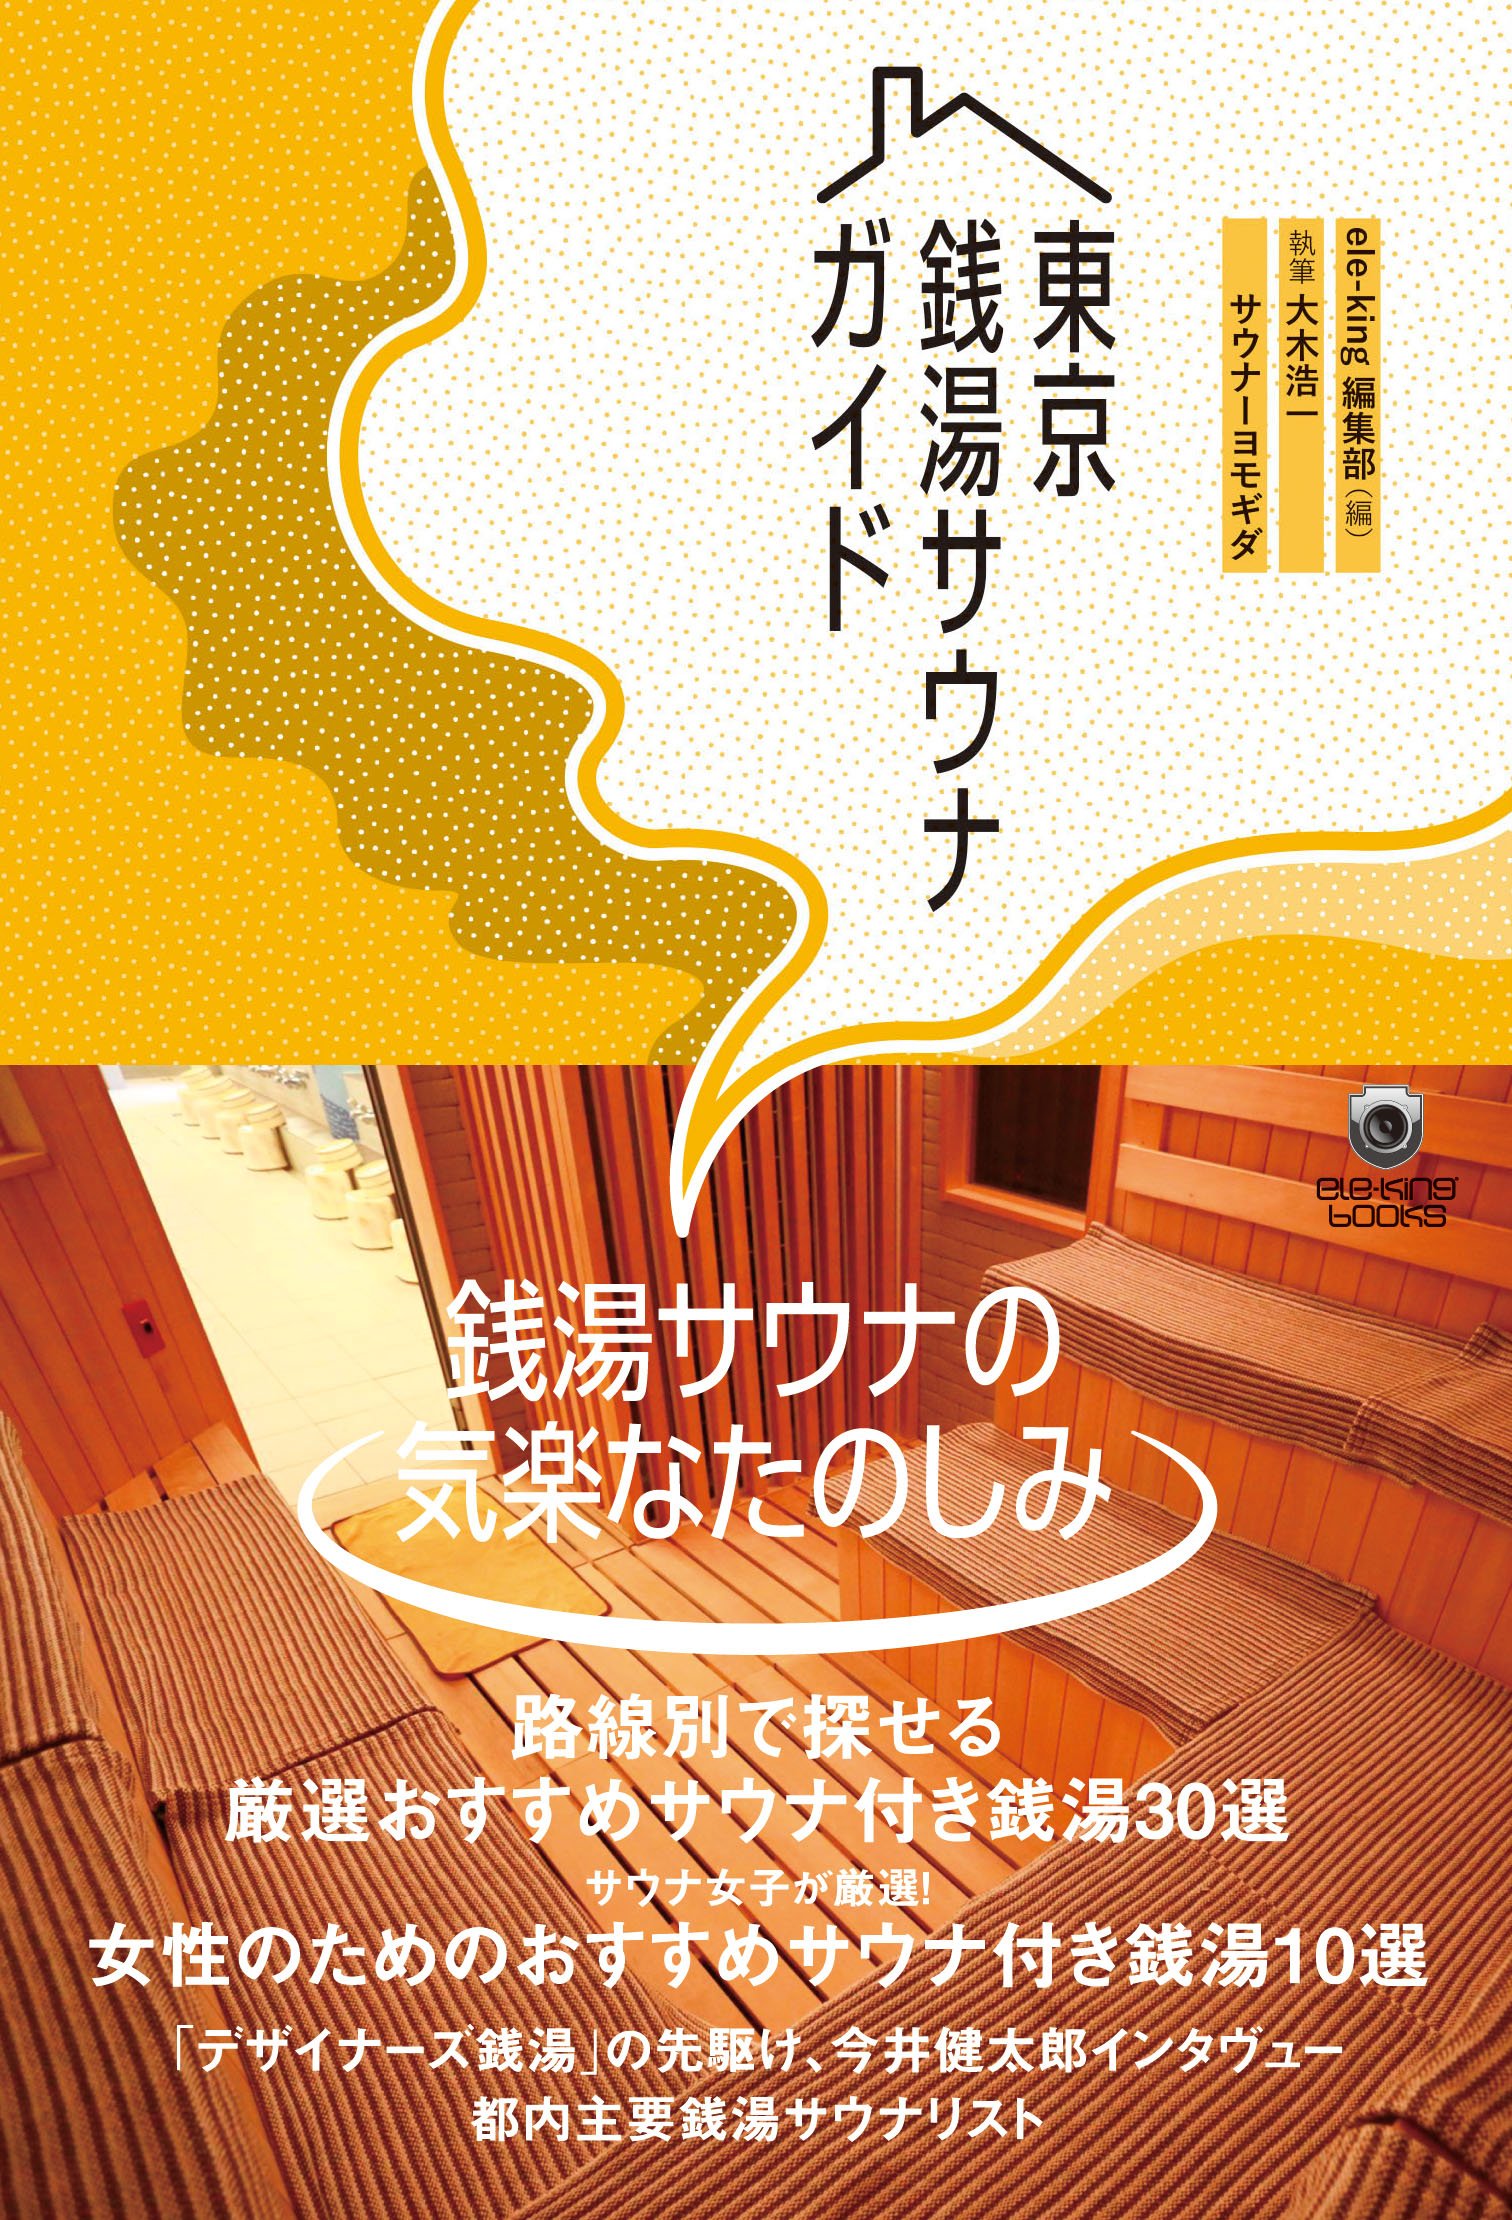 sauna_cover_obi.jpg